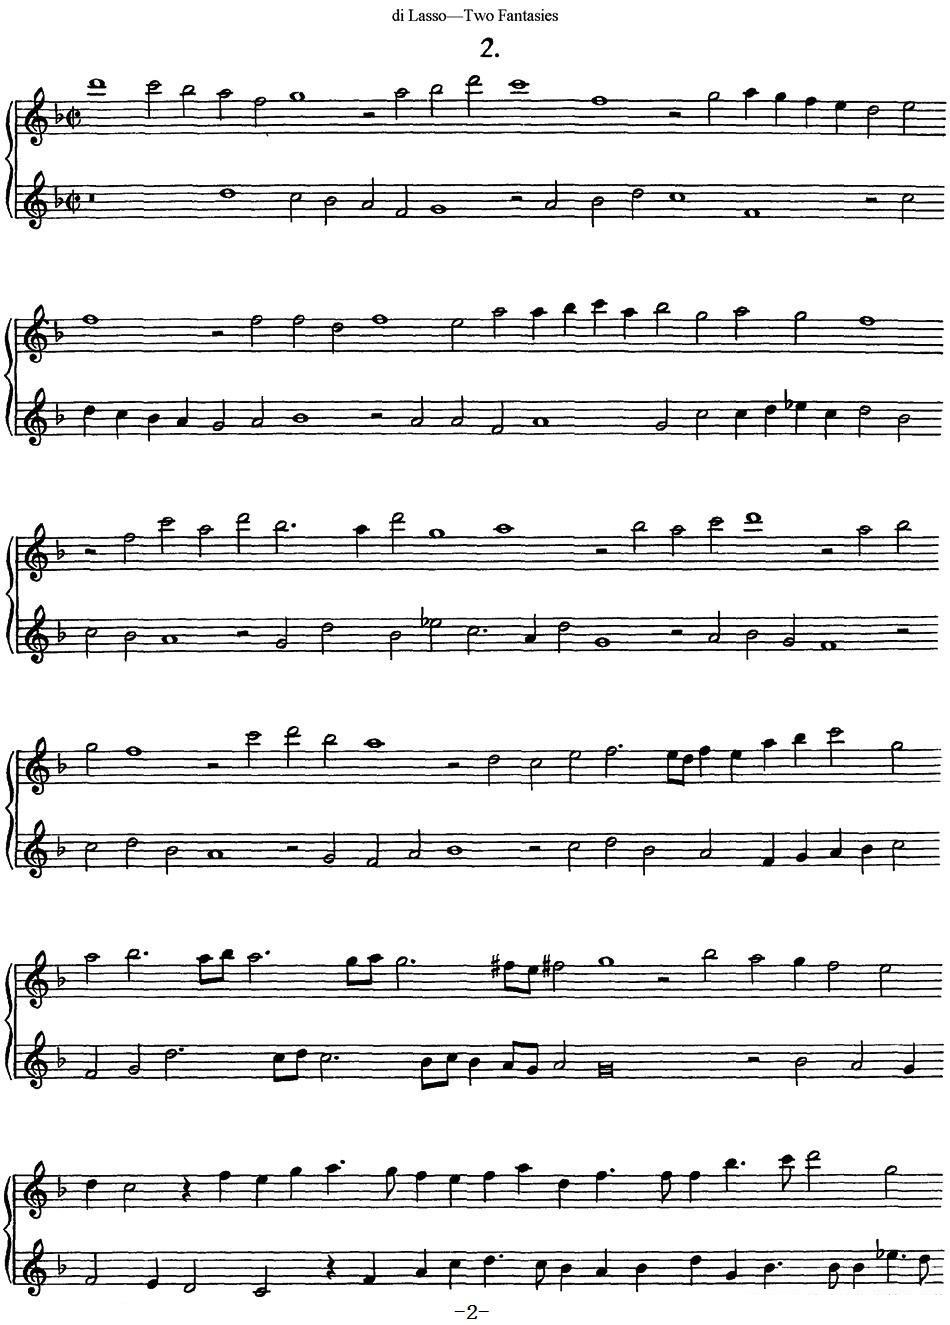 《迪.拉索长笛二重奏2段幻想曲》长笛谱